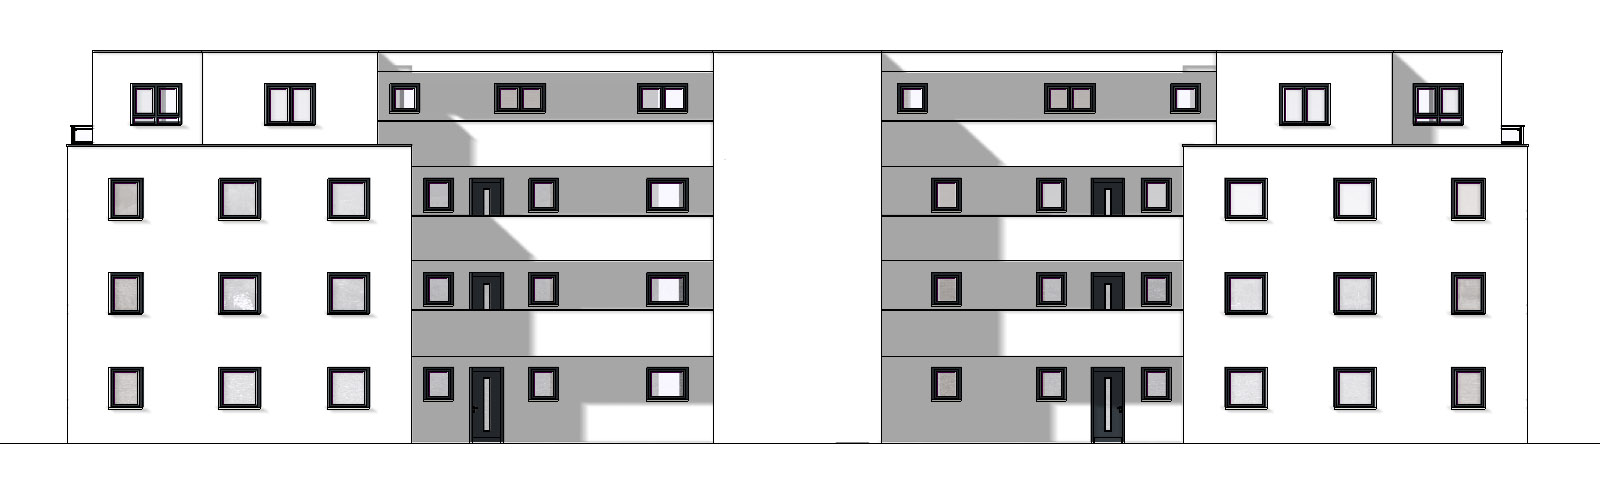 Wohnanlage mit 18 Wohnungen Ansicht 1